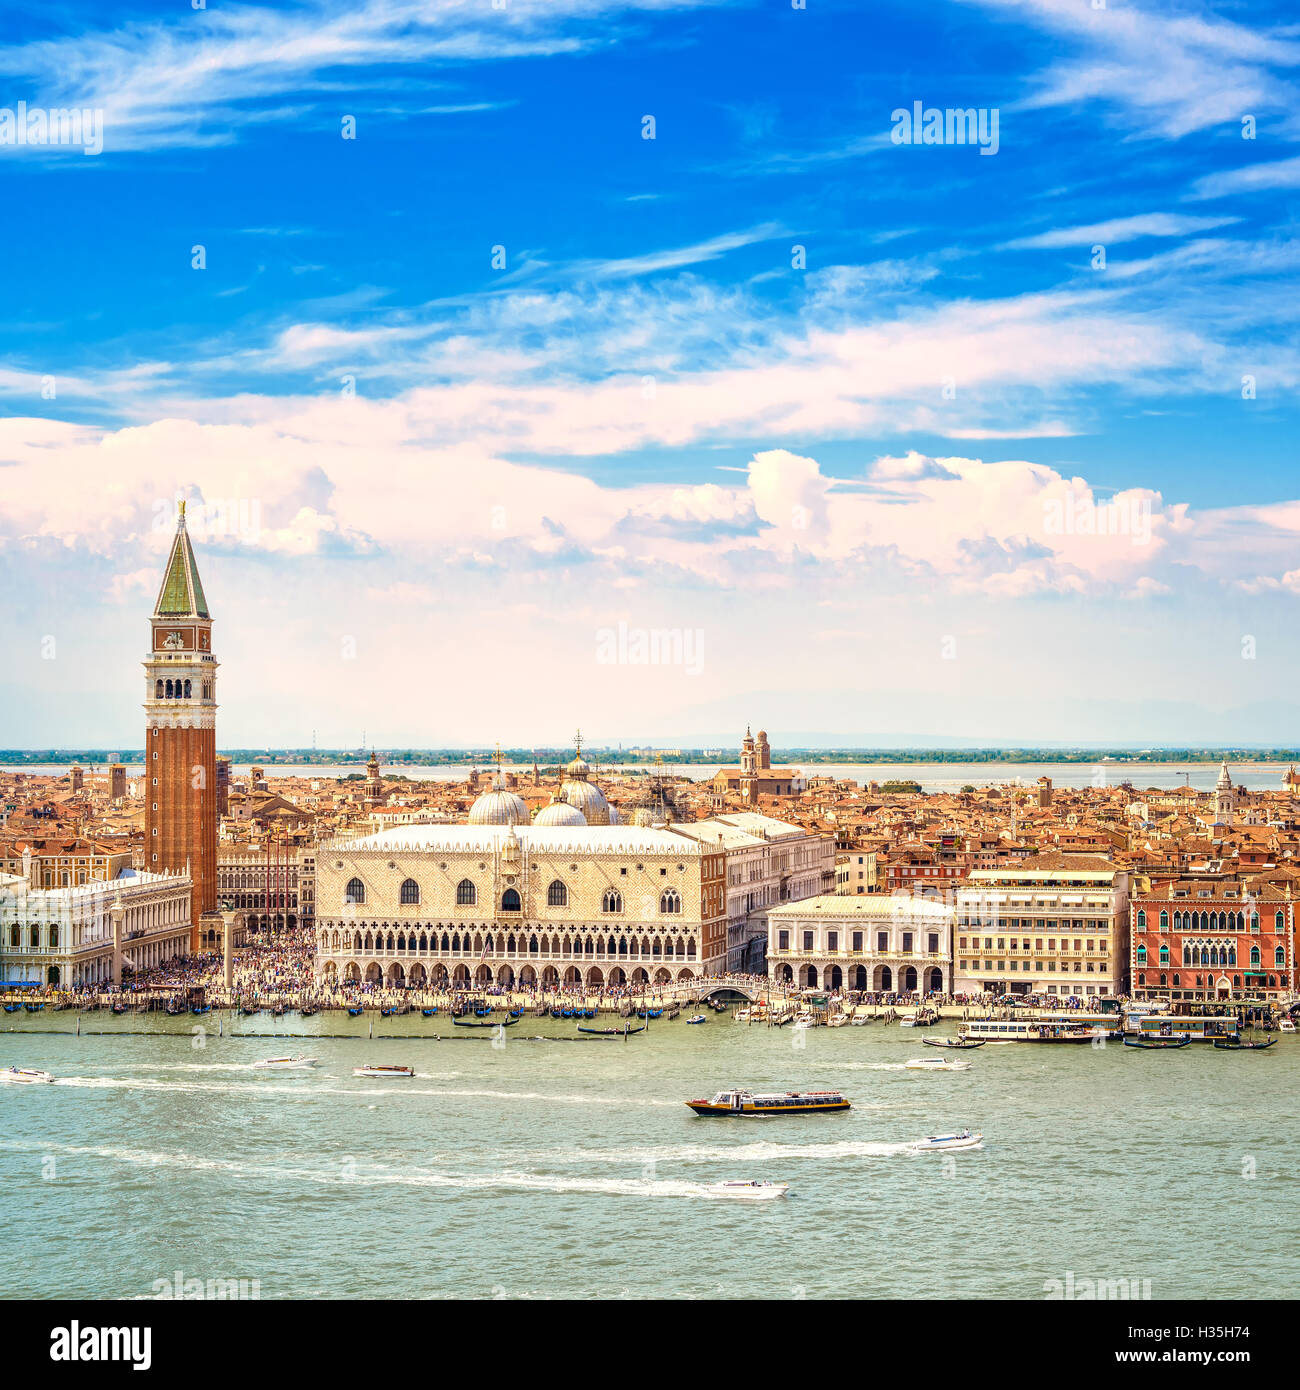 Luftaufnahme des Piazza San Marco oder St Mark Platz, Campanile und Ducale oder Dogenpalast Venedig Wahrzeichen. Italien, Europa. Stockfoto